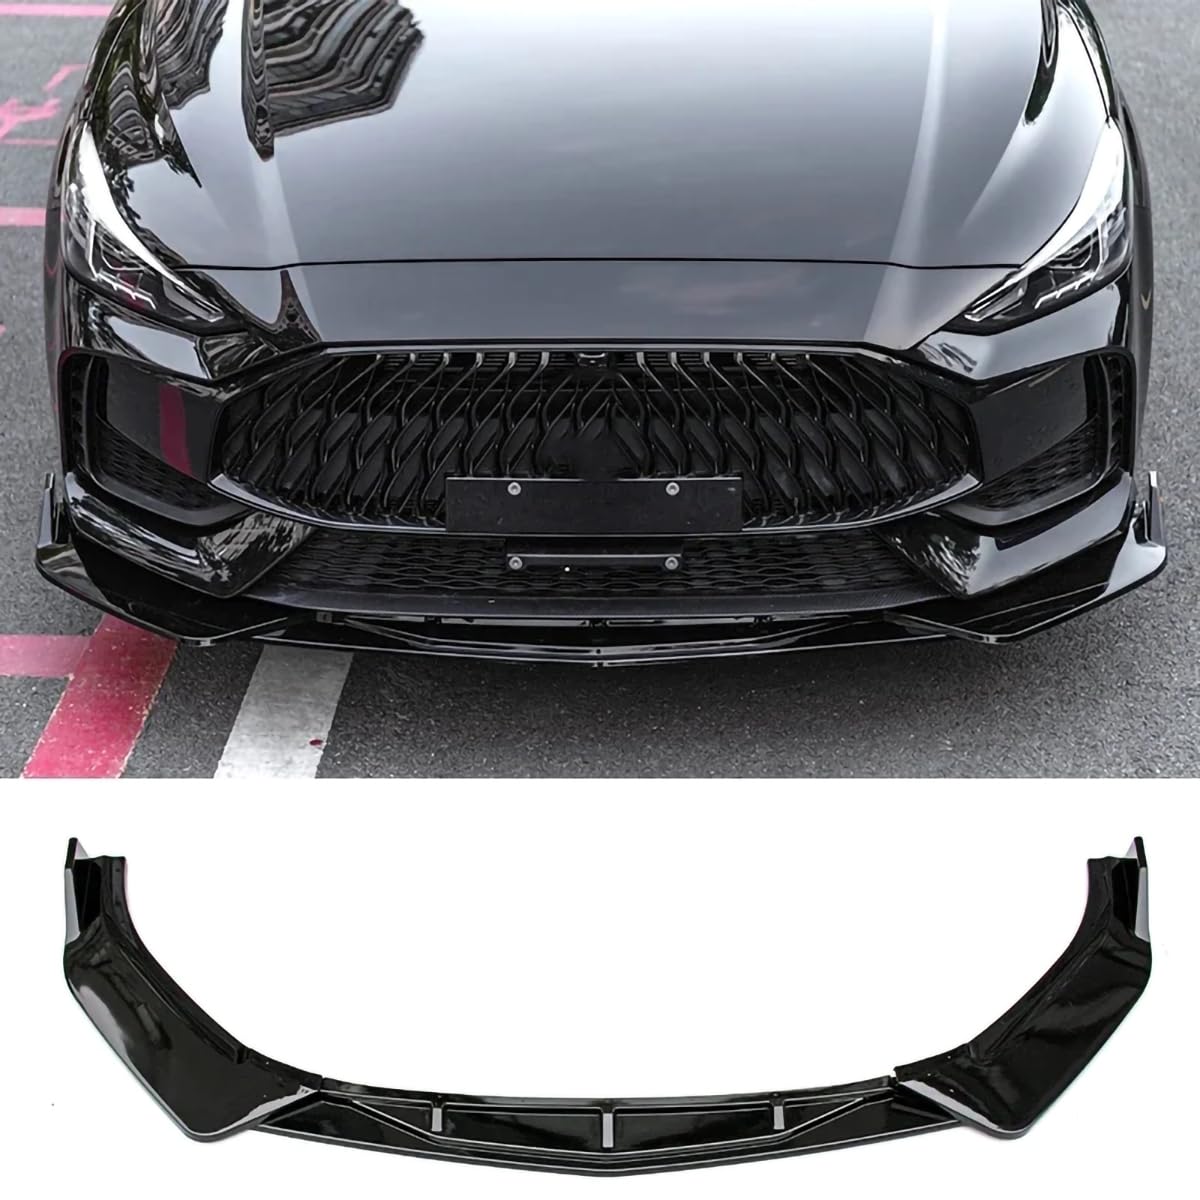 Auto-Frontstoßstangen-Lippenspoiler-Splitter für MG GT 5 2021-2023, Frontschaufel-Bodykit-Spoiler,B-Glossy black von Spulhc